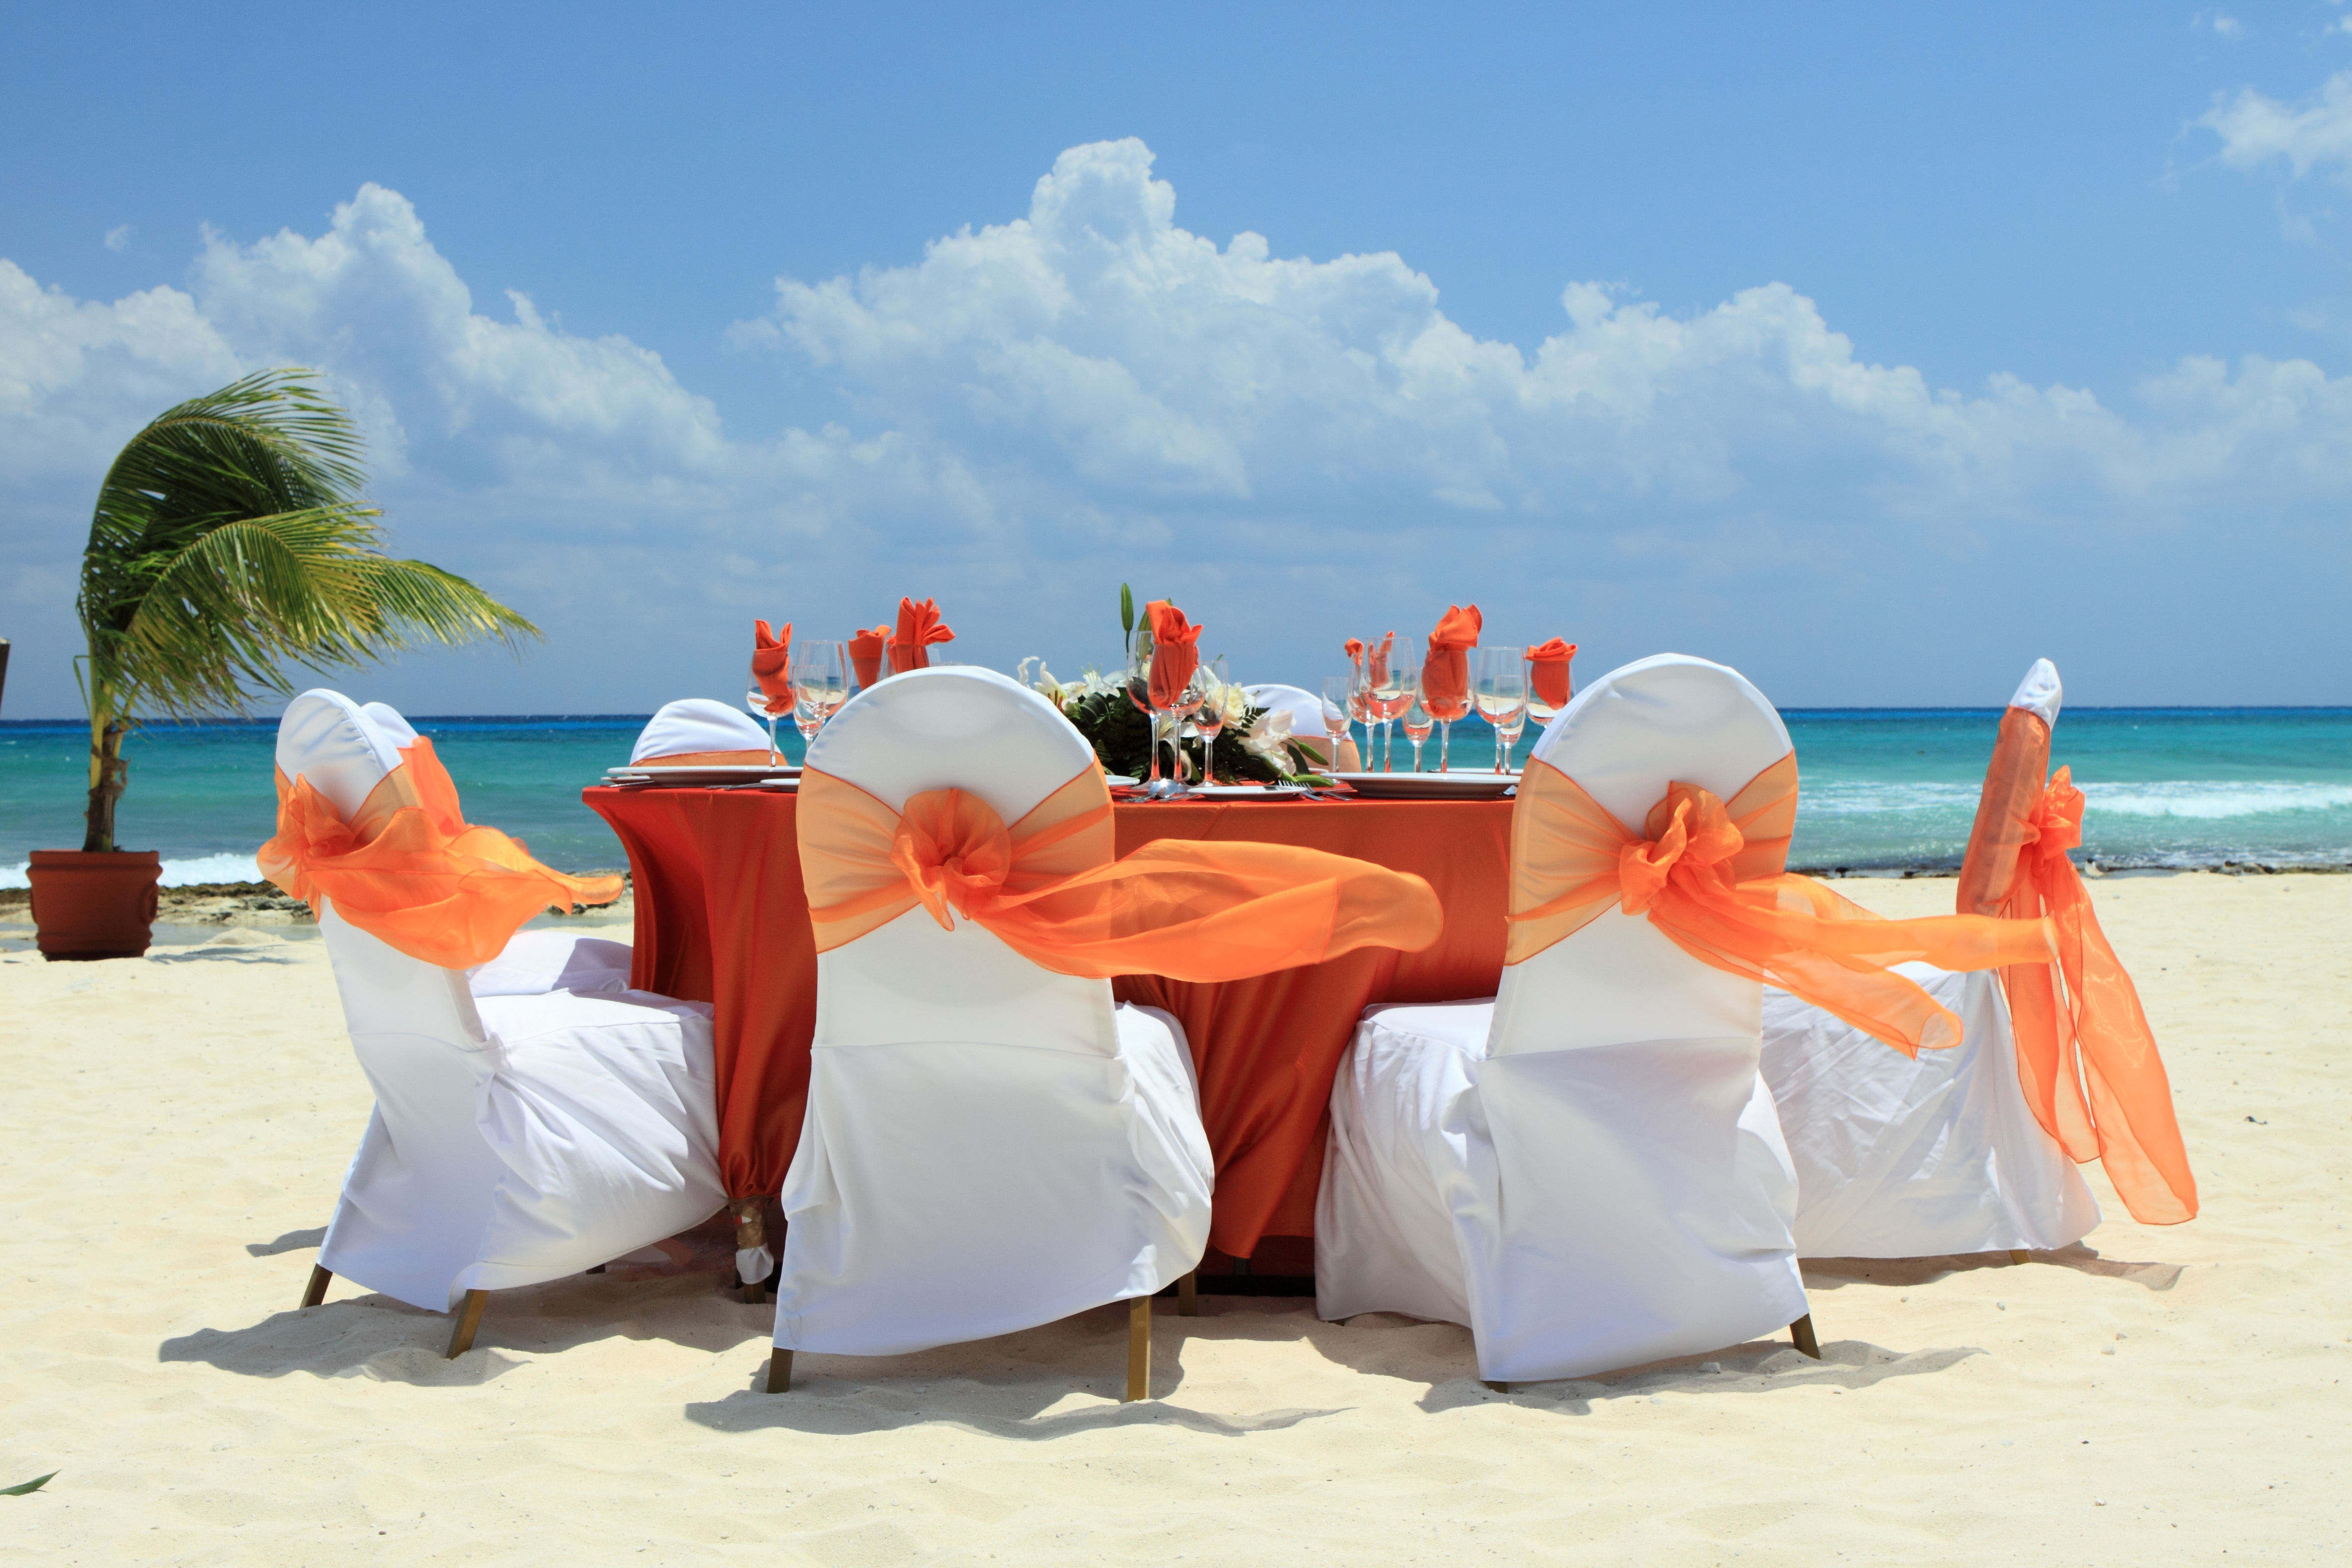 Wedding on a beach in a tropic  resort.